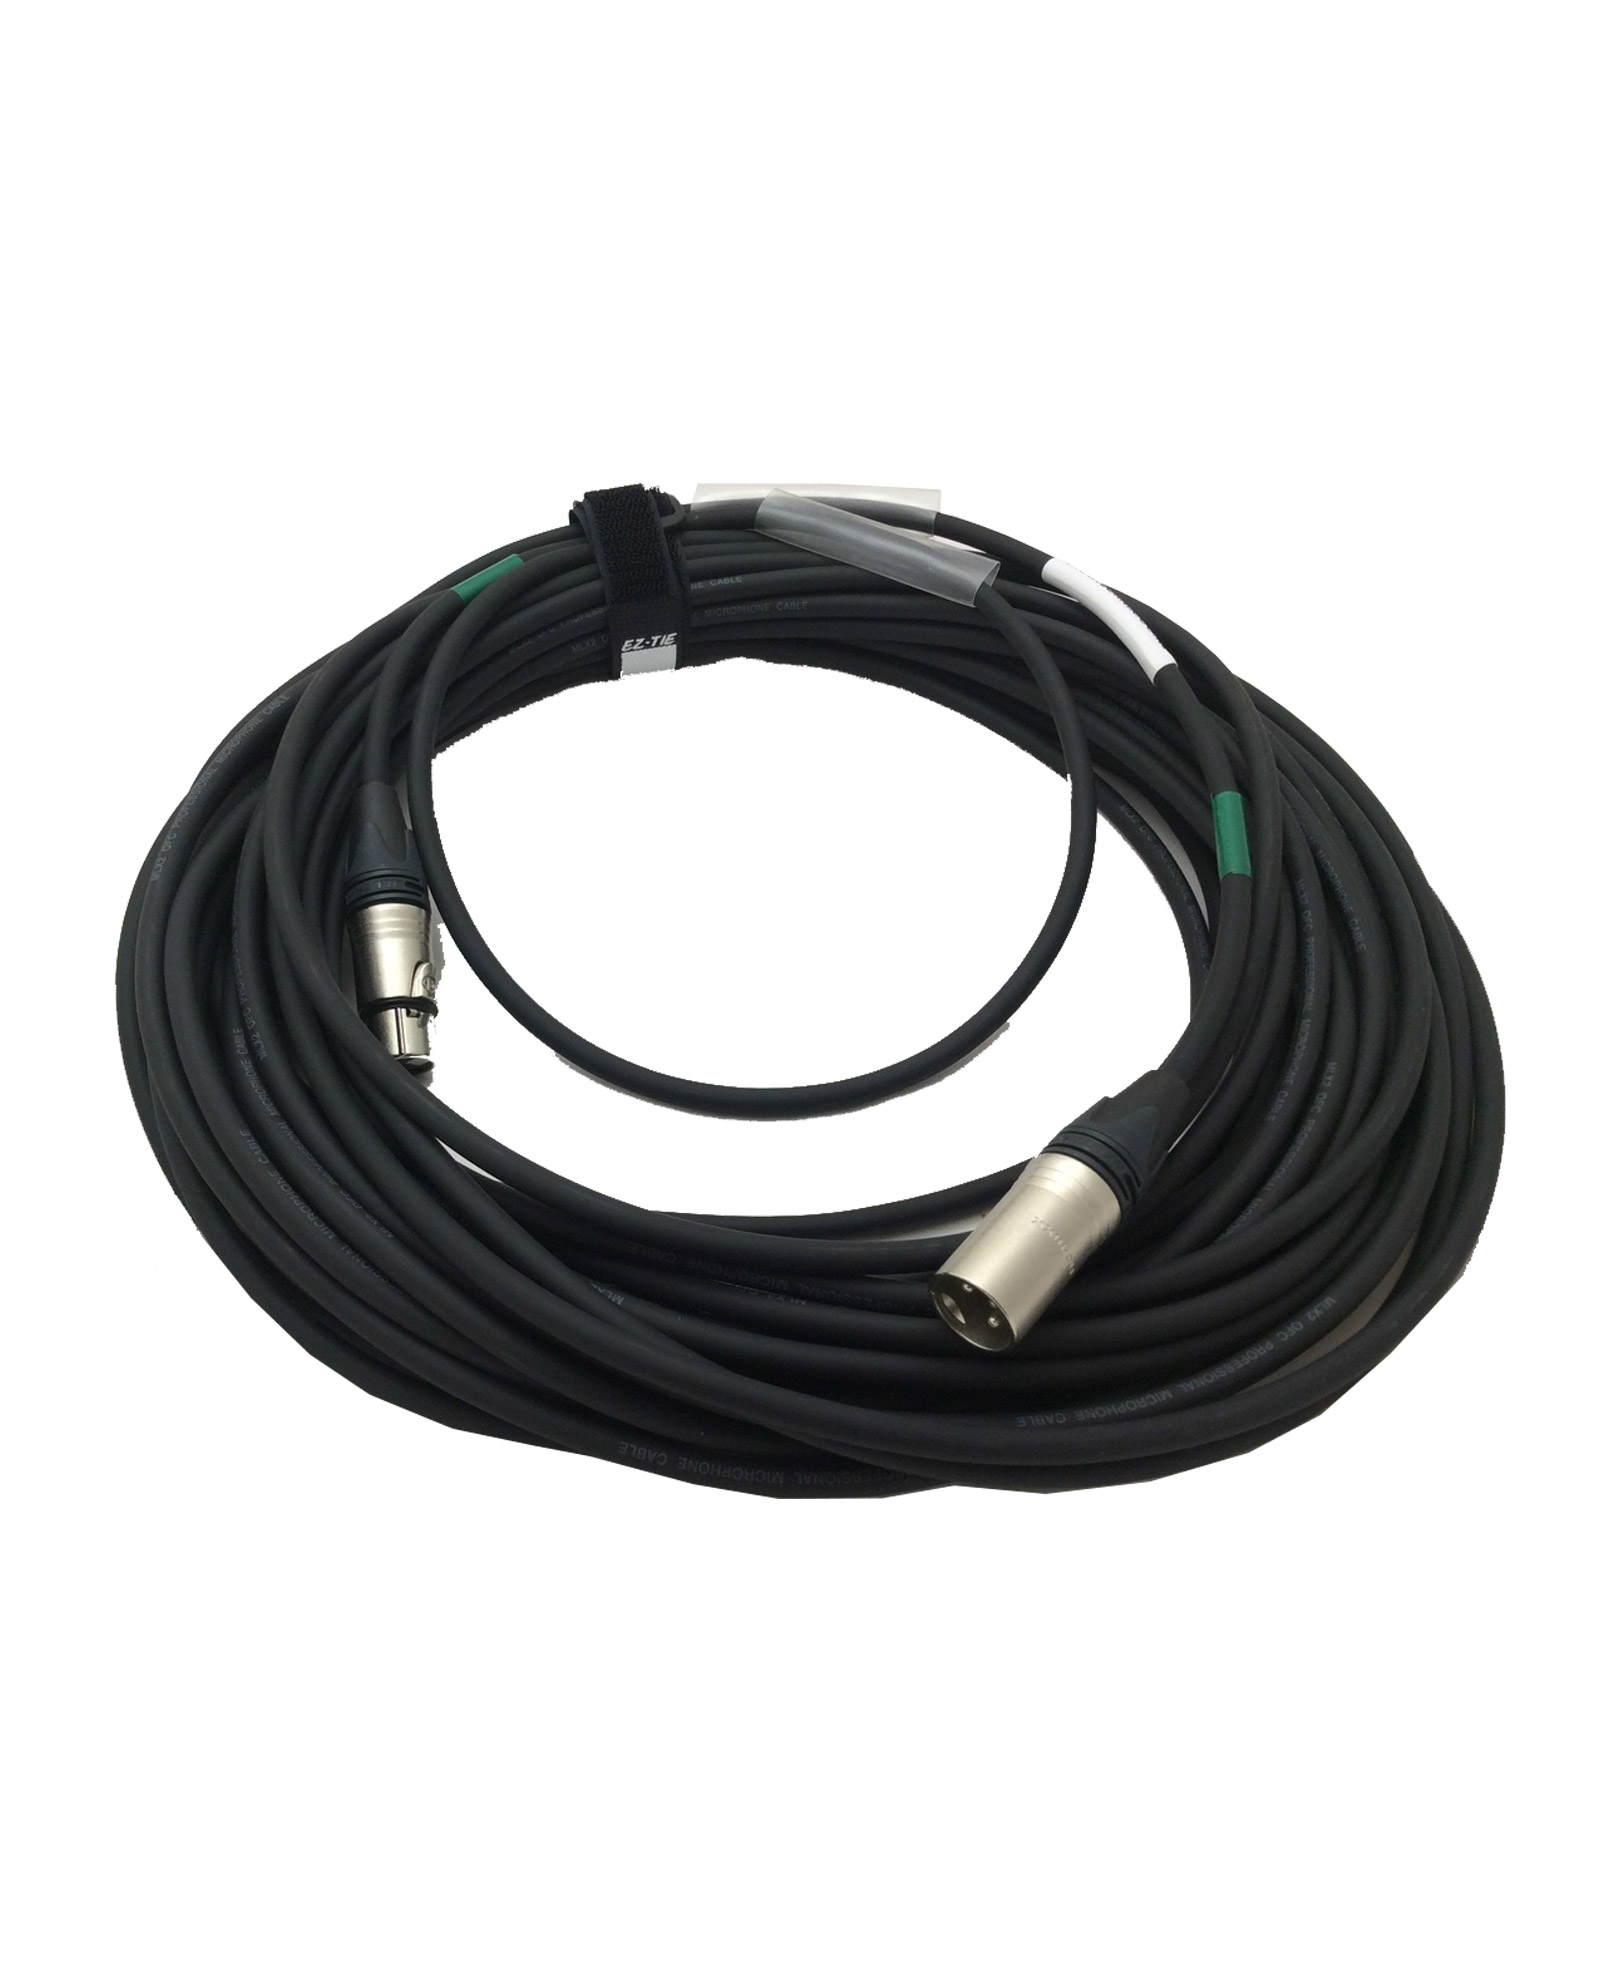 Aes Ebu Mic Cable Eurocable D2n6s2 + Neutrik Connectors